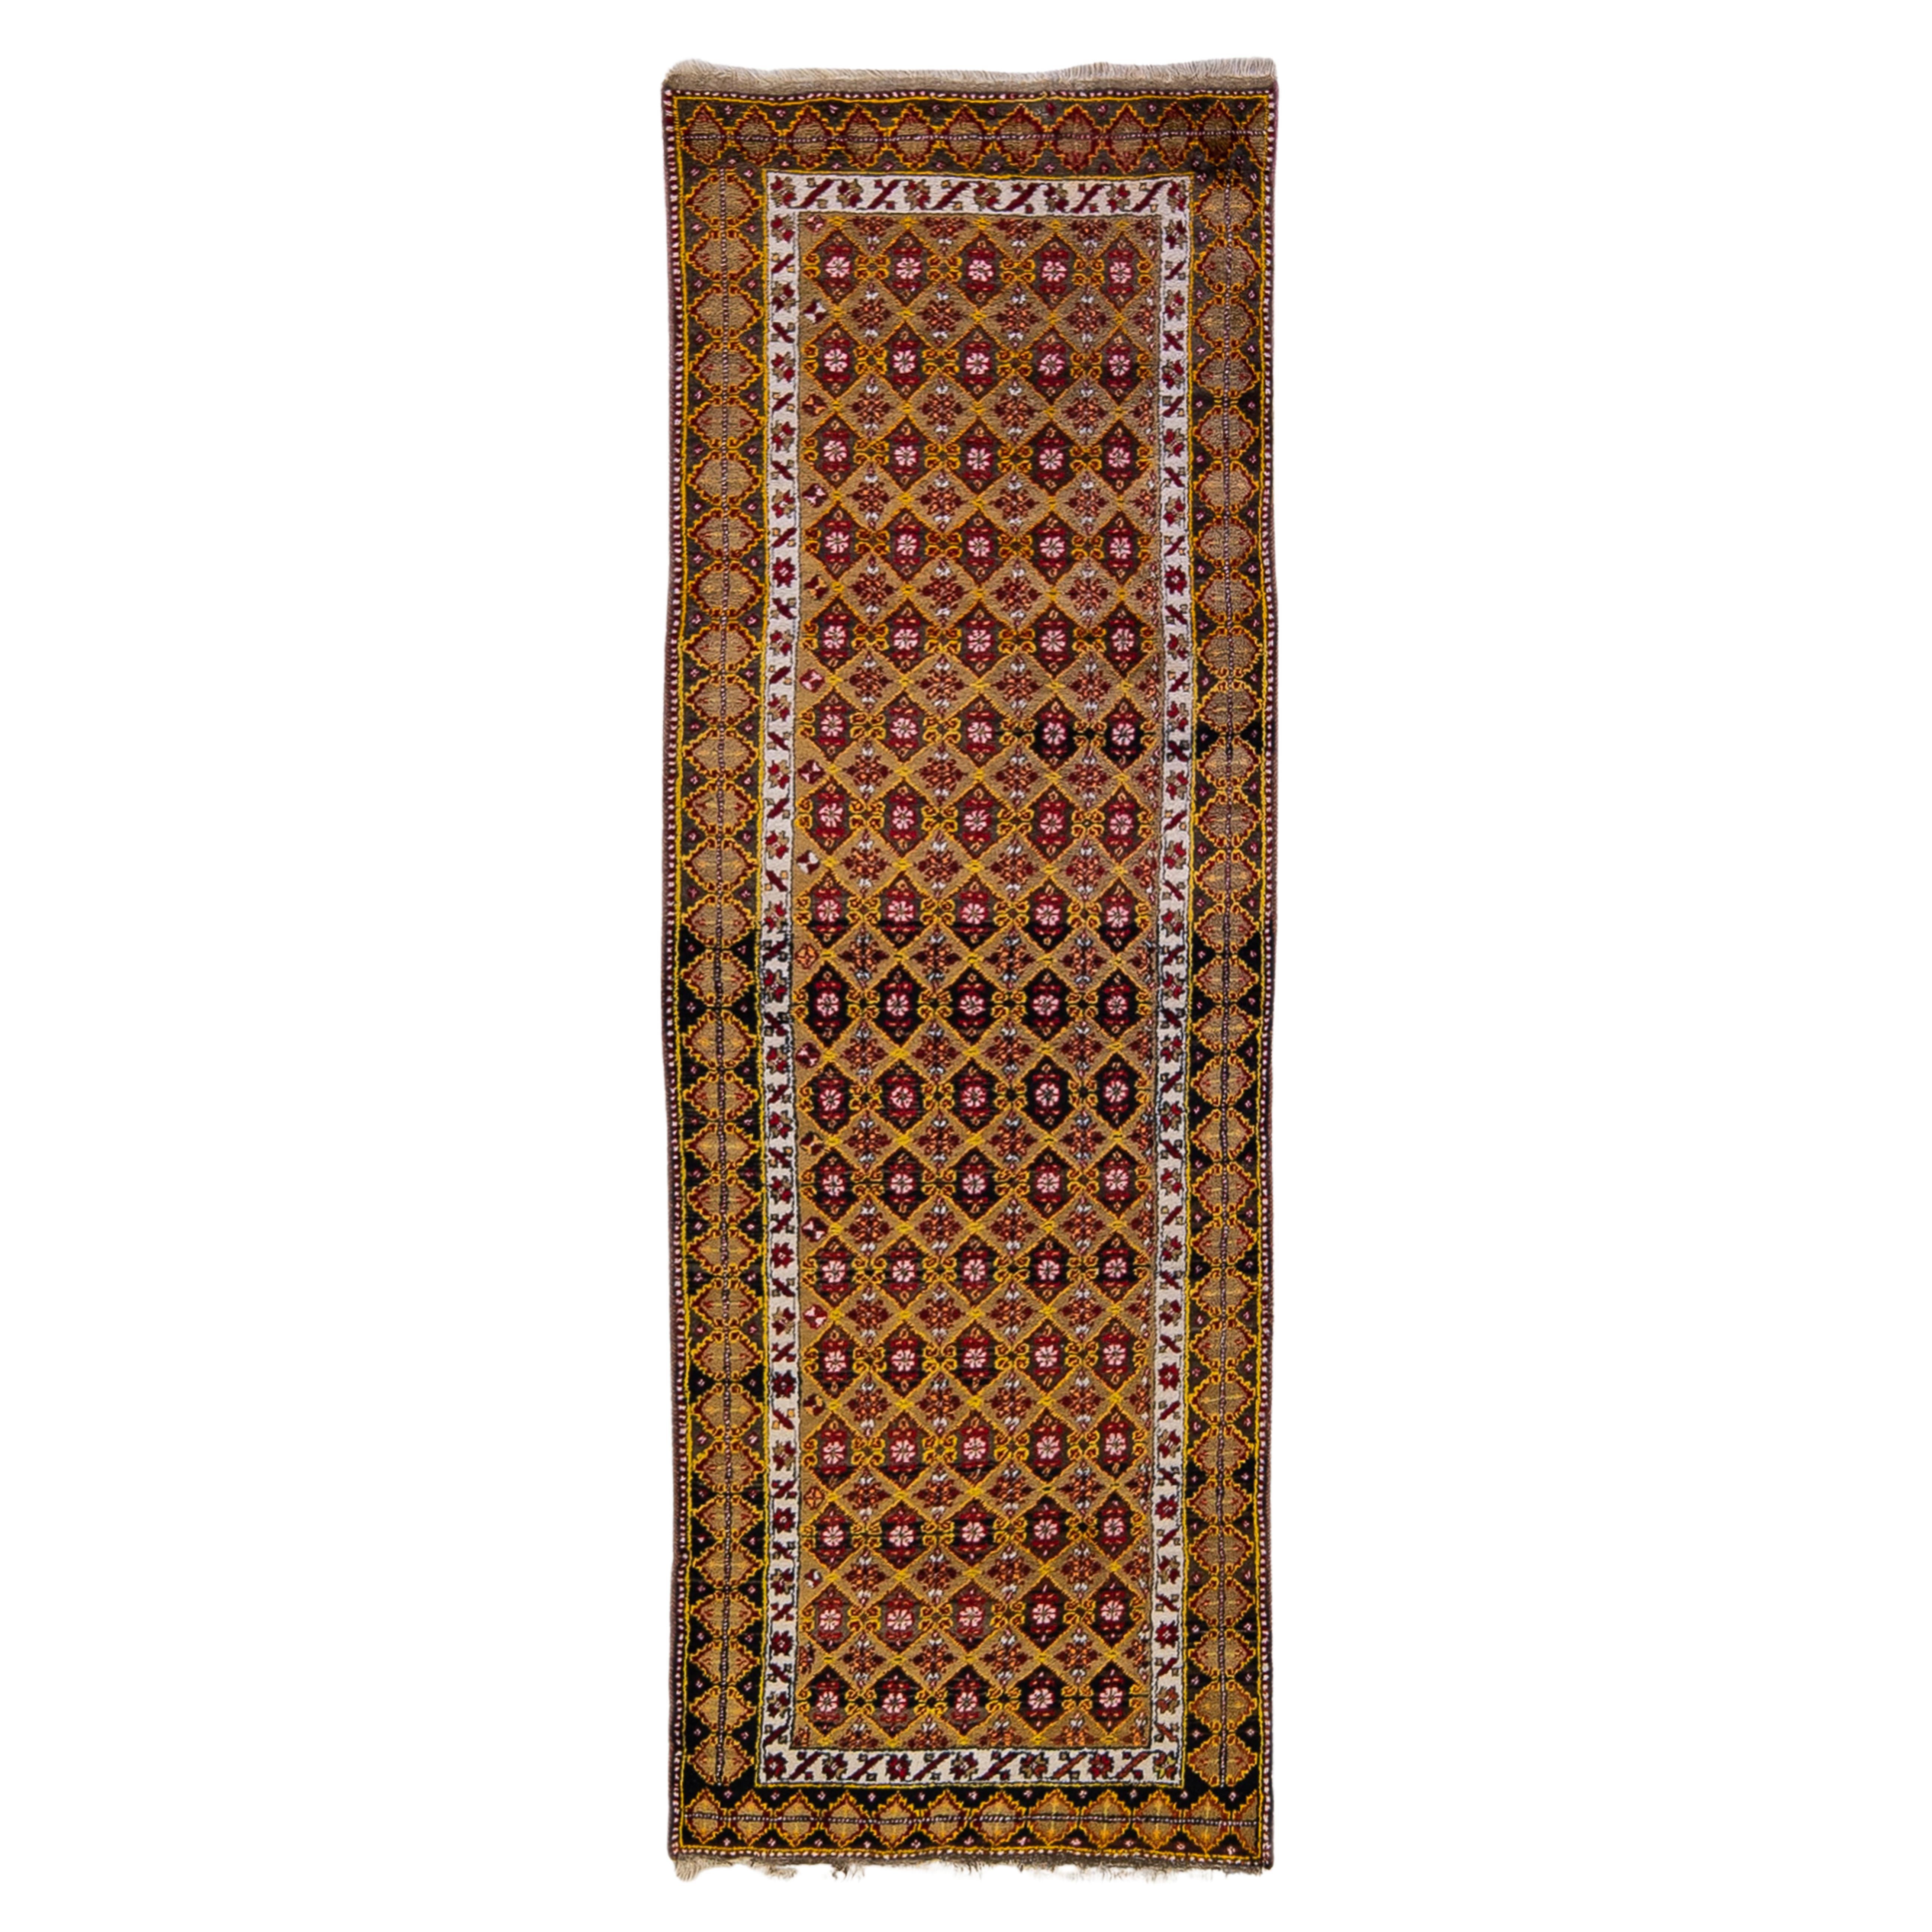 Tapis de couloir en laine turc ancien entièrement conçu à la main